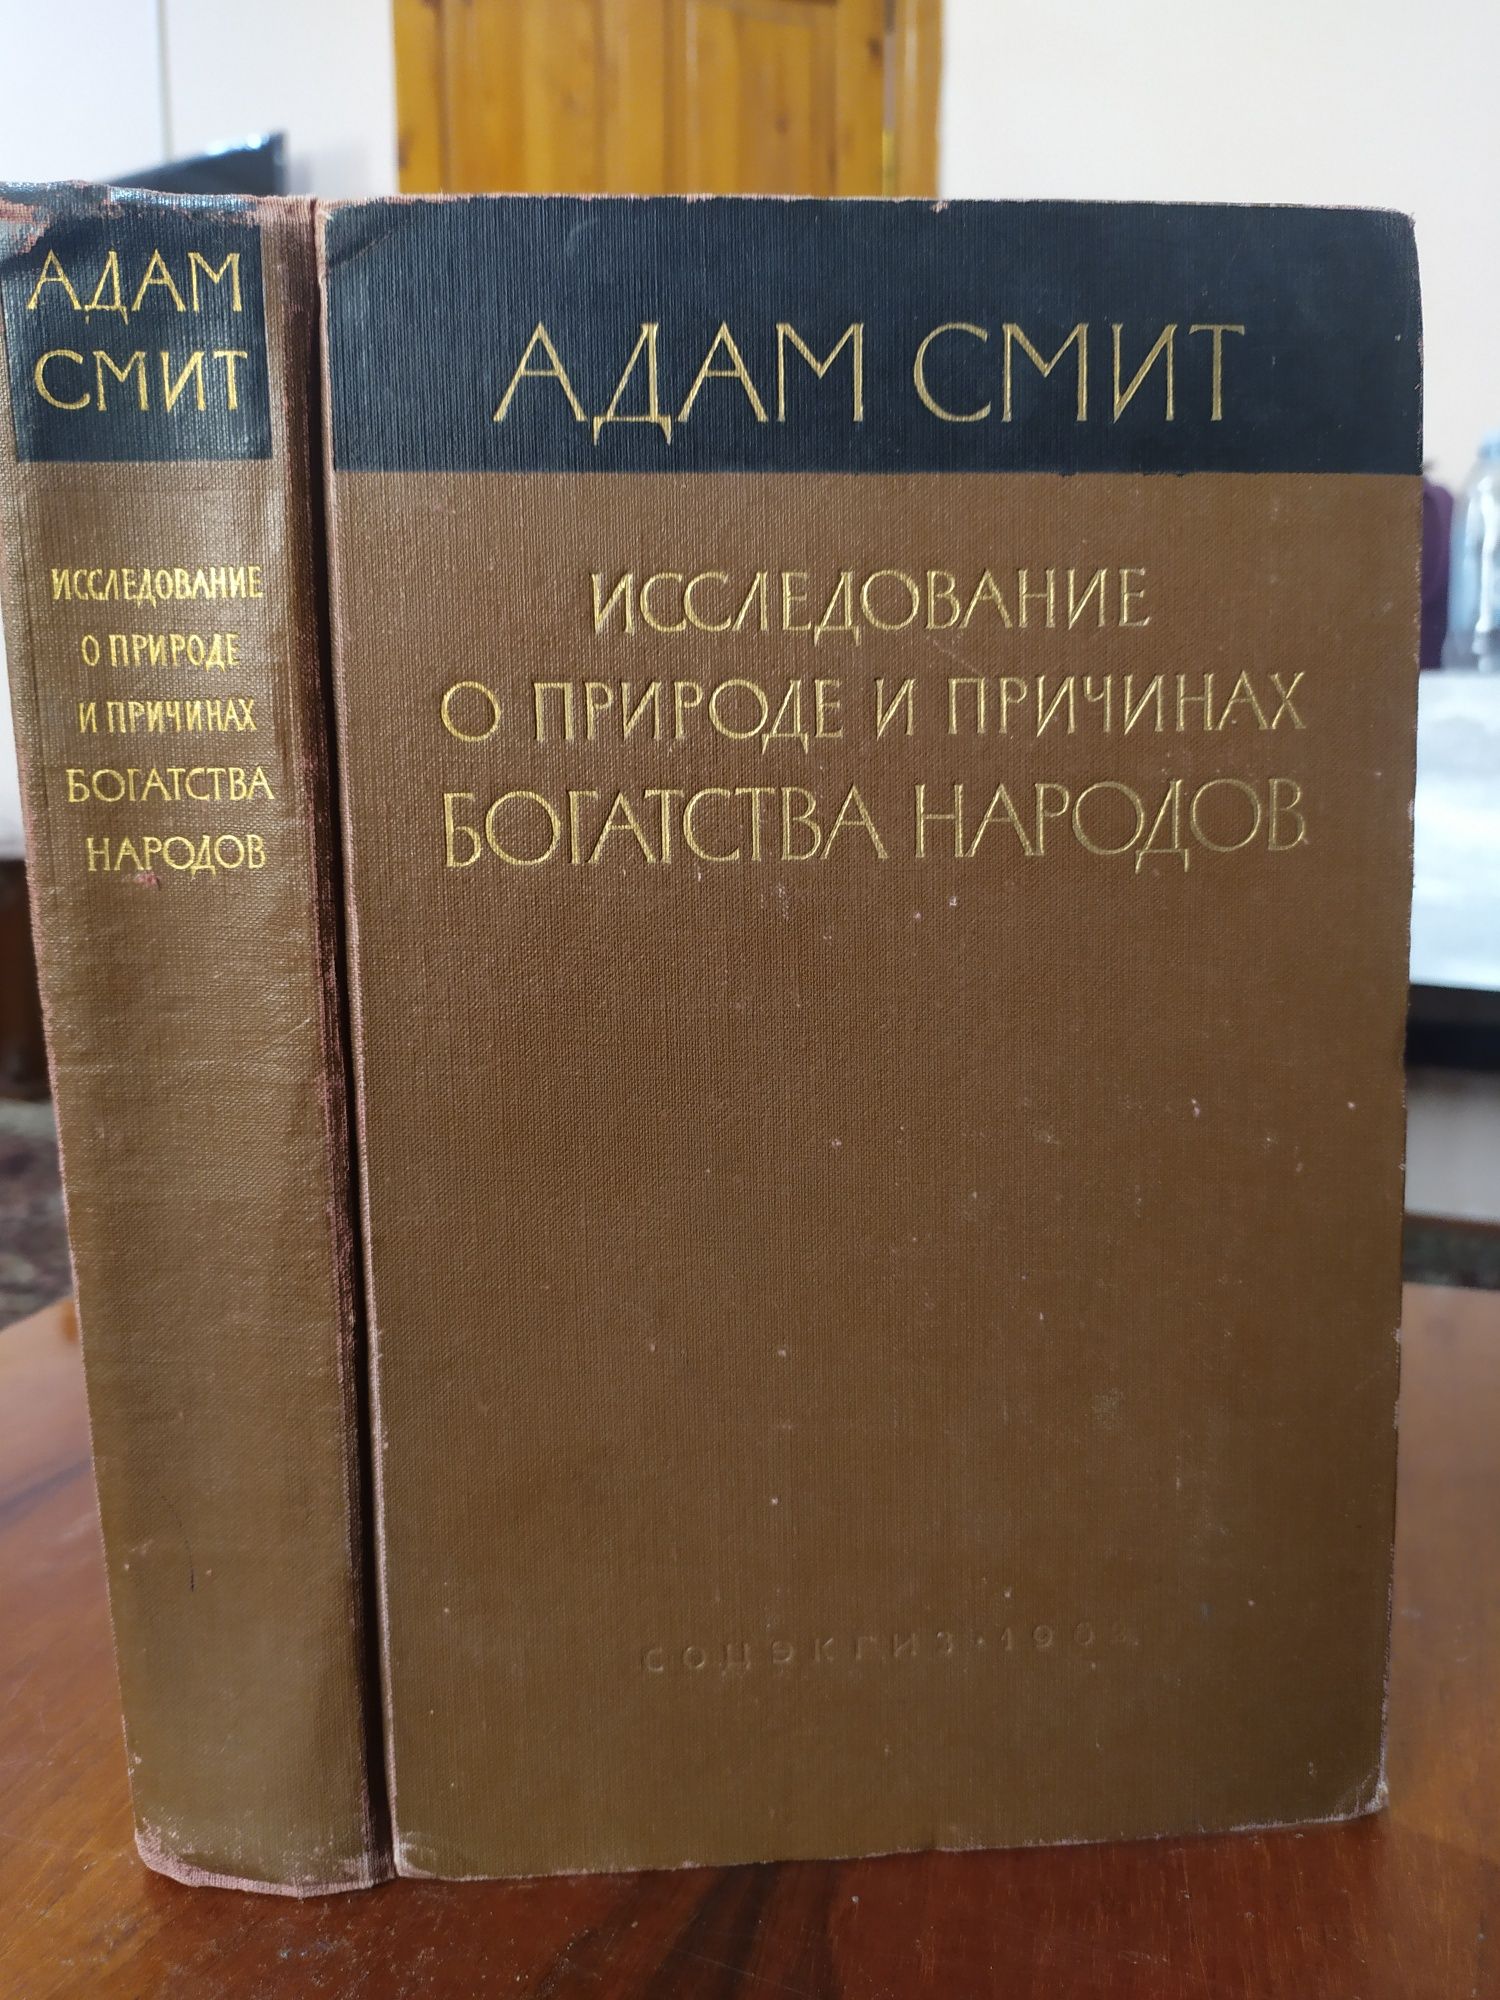 Редкая книга Адама Смита